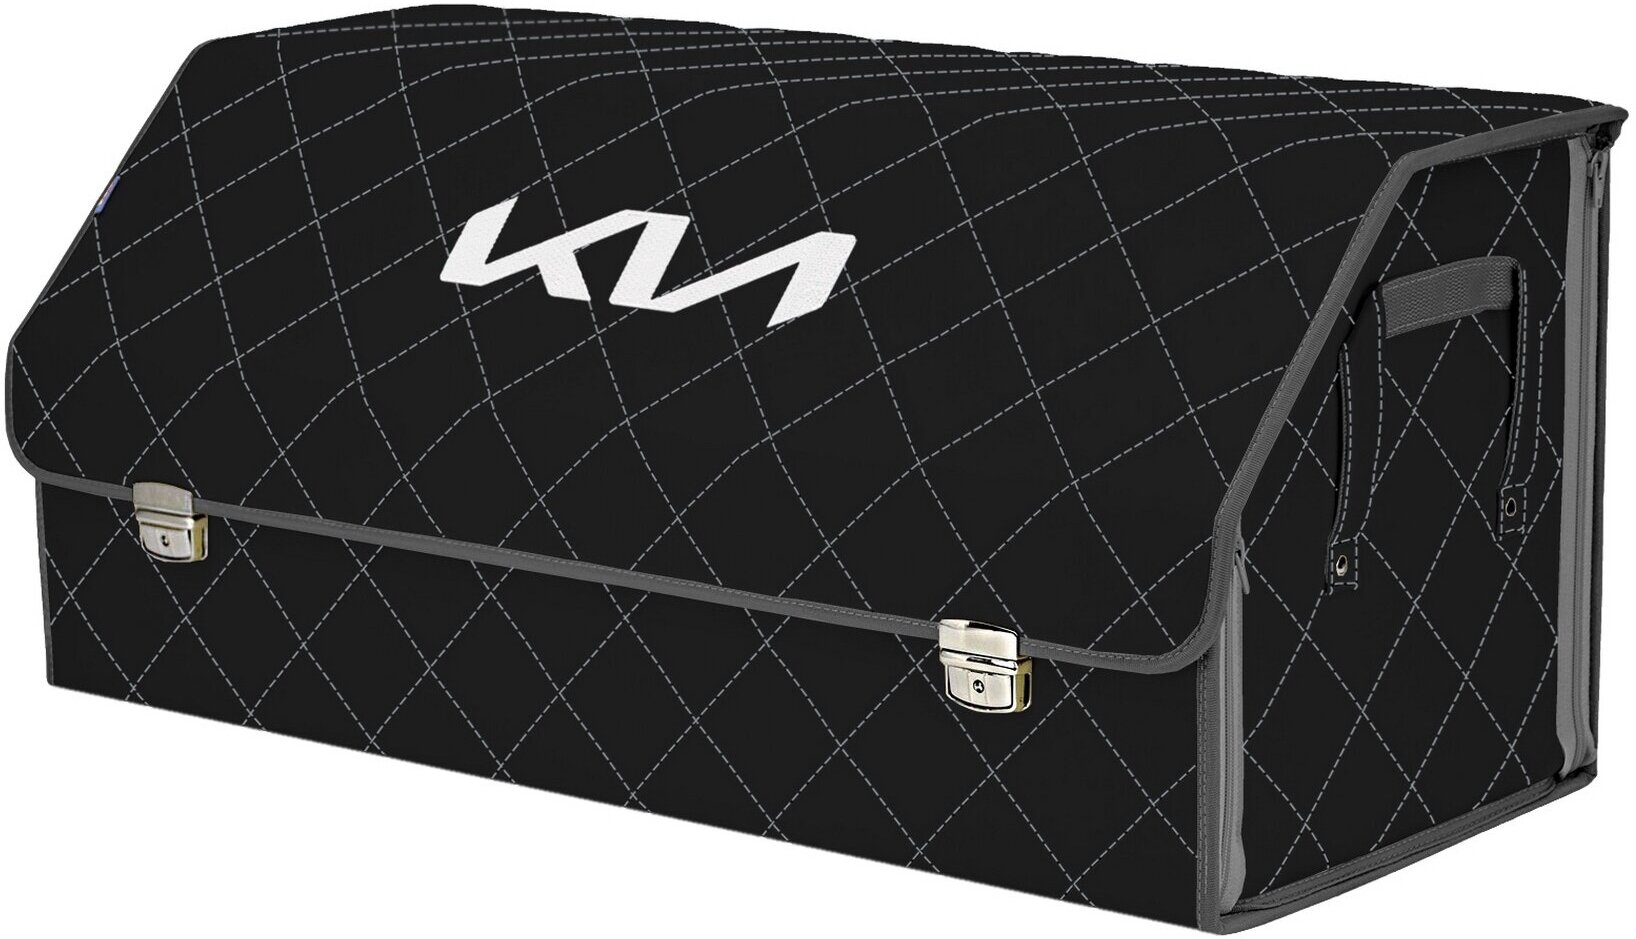 Органайзер-саквояж в багажник "Союз Премиум" (размер XXL). Цвет: черный с серой прострочкой Ромб и вышивкой KIA (КИА).